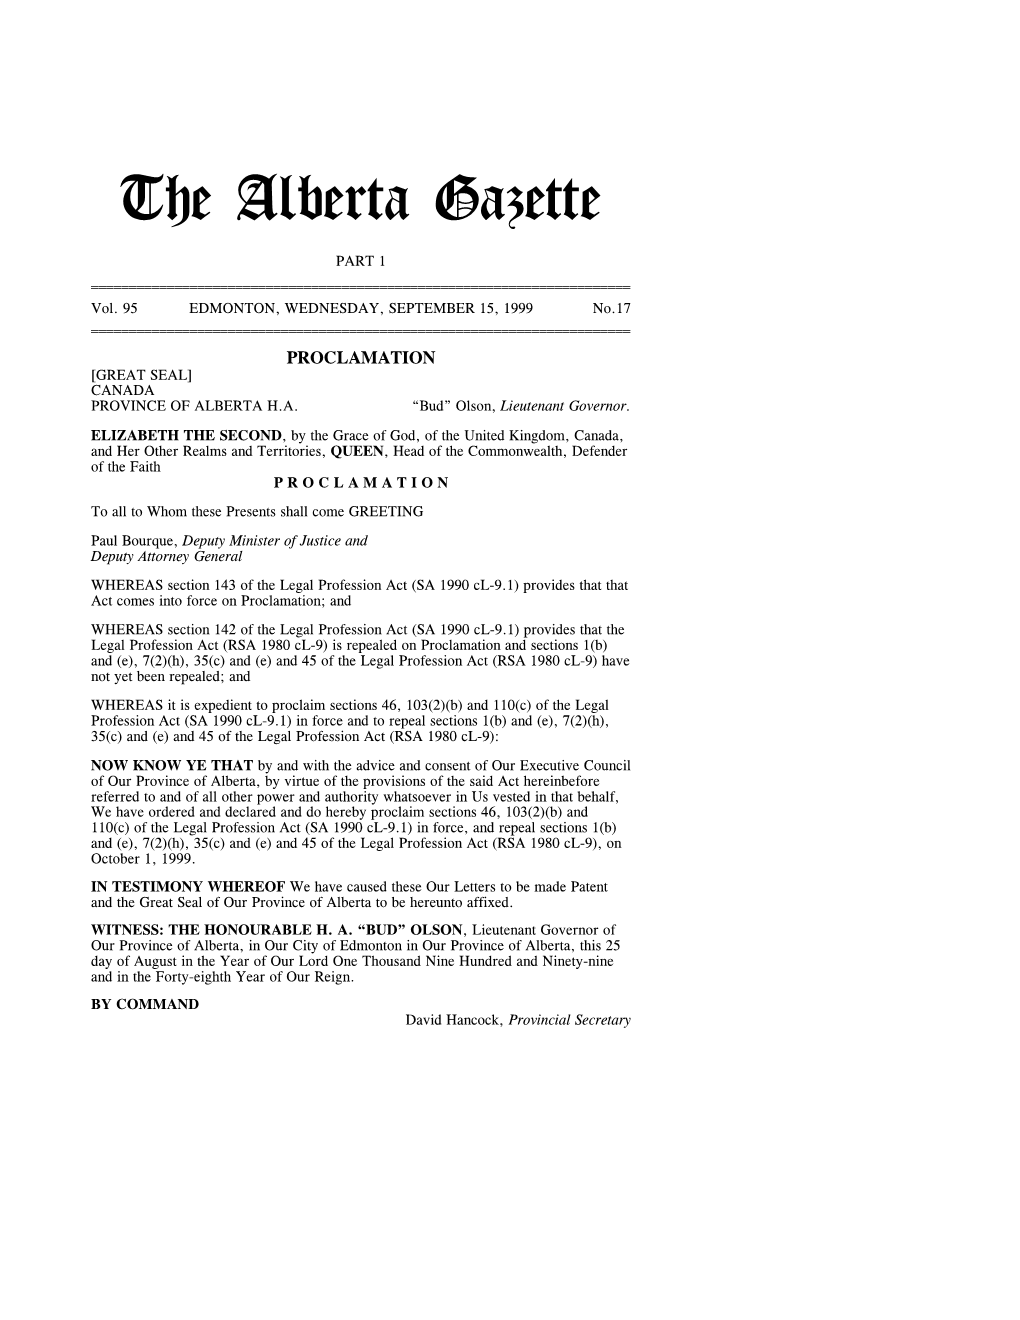 The Alberta Gazette, Part I, September 15, 1999